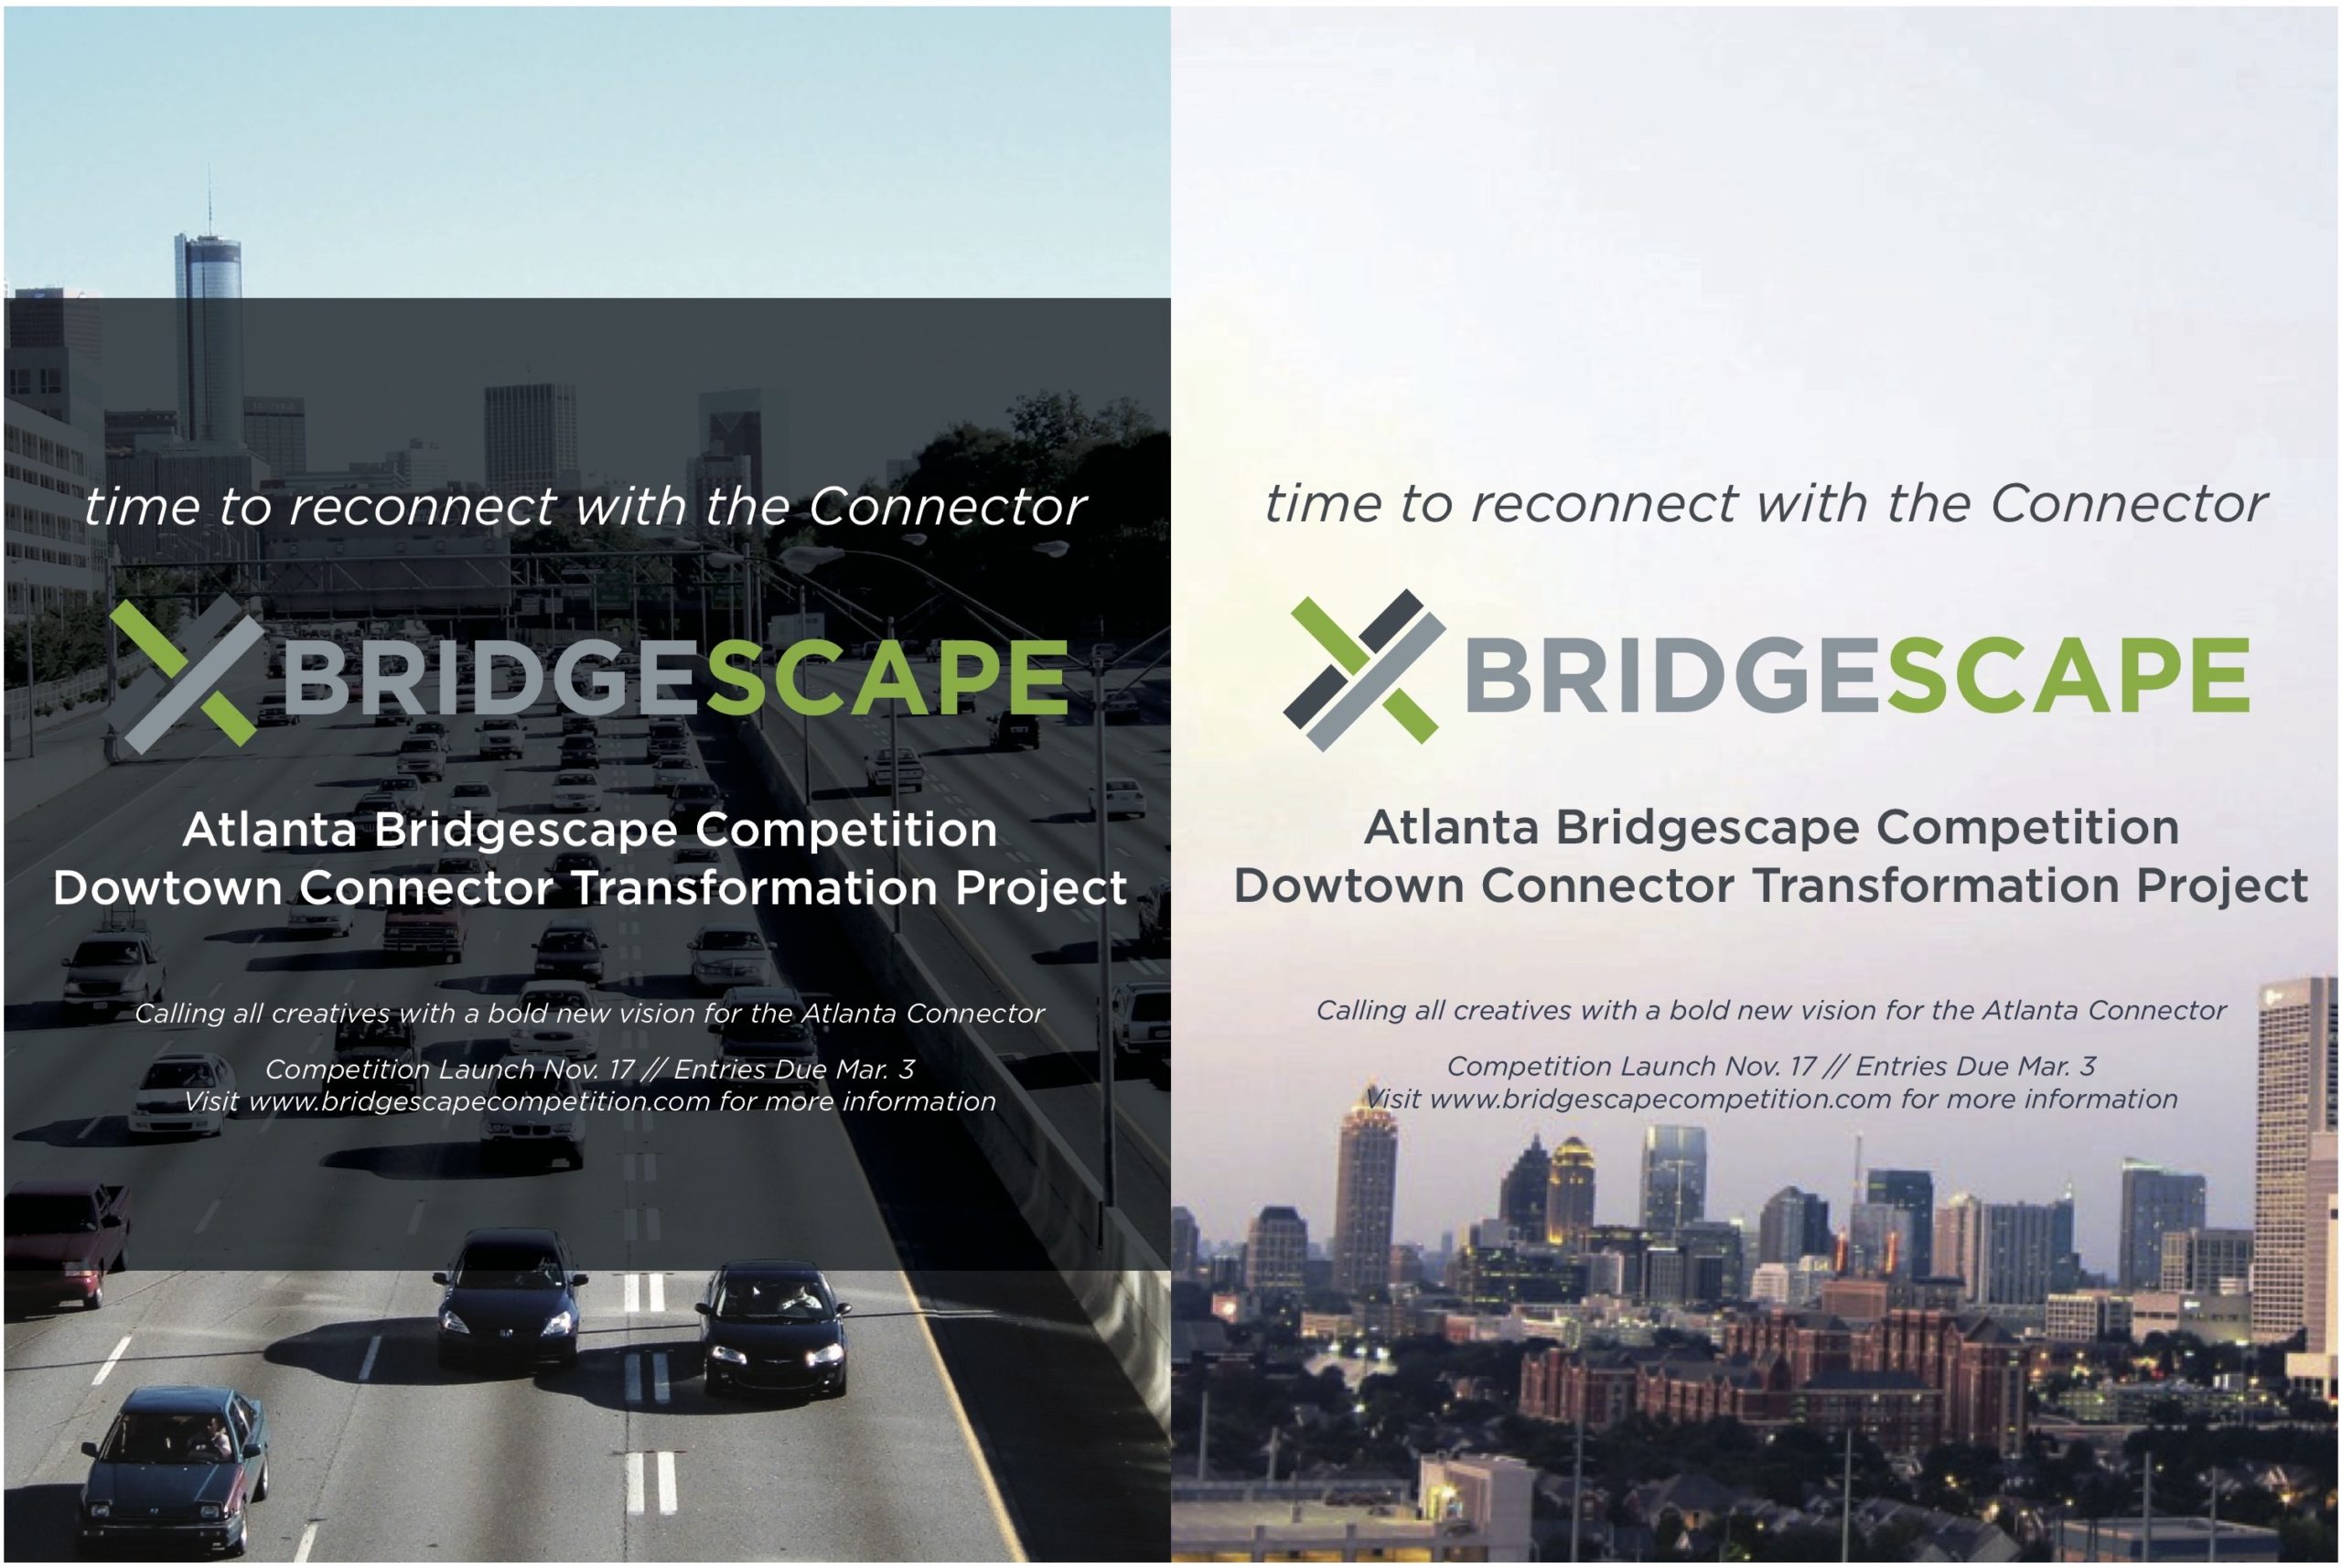 bridgescape poster designs